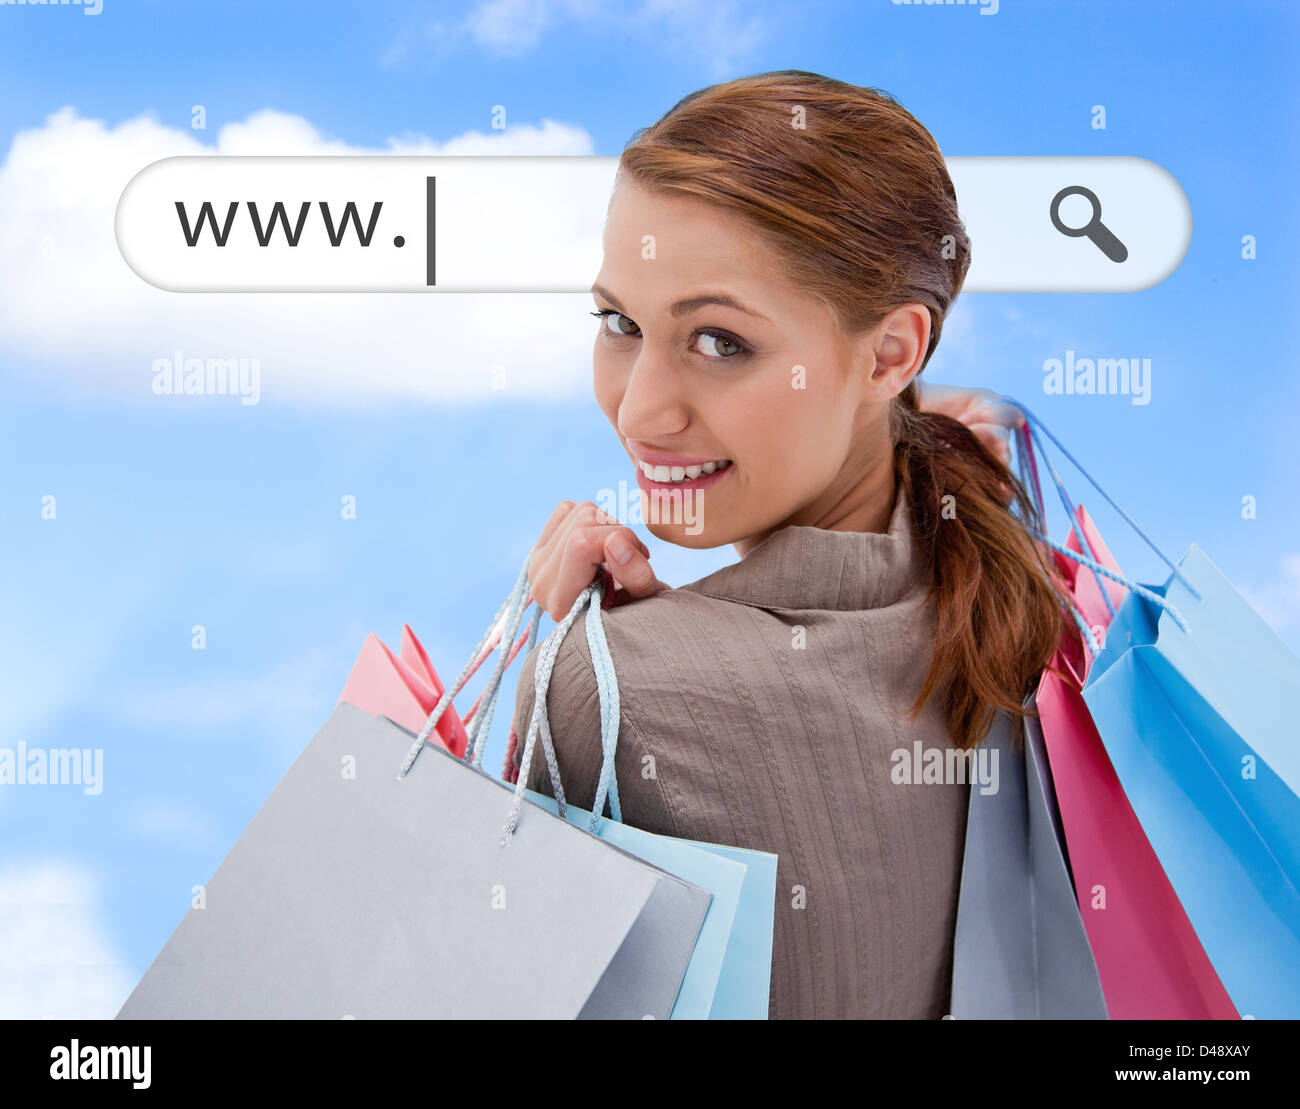 Frau auf der Suche über die Schulter mit Einkaufstüten unter Adressleiste Stockfoto